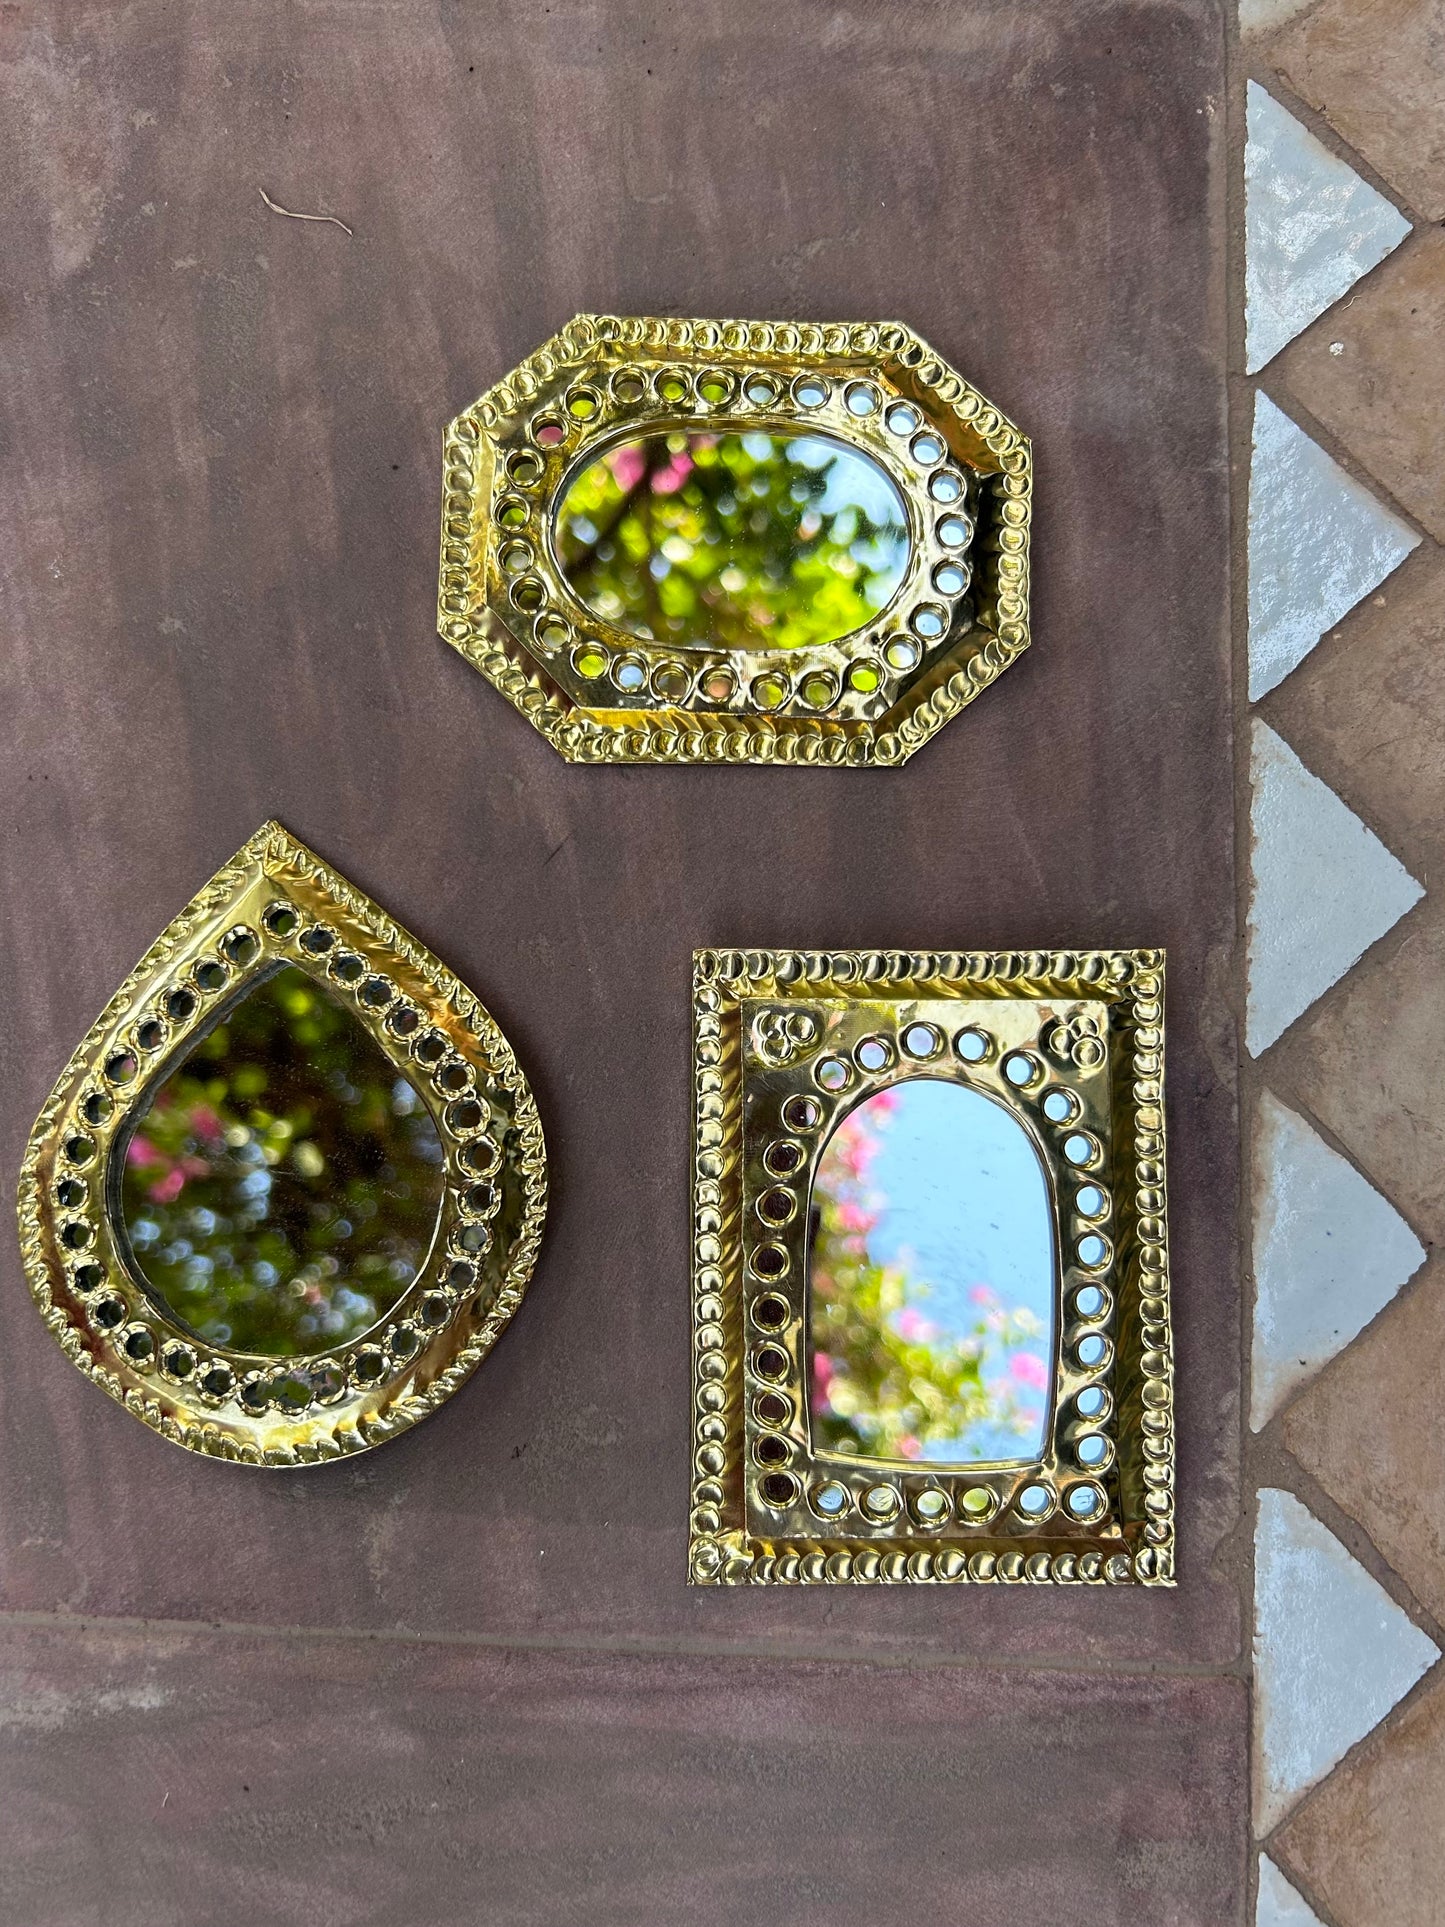 Marokkaanse mini spiegeltjes van messing